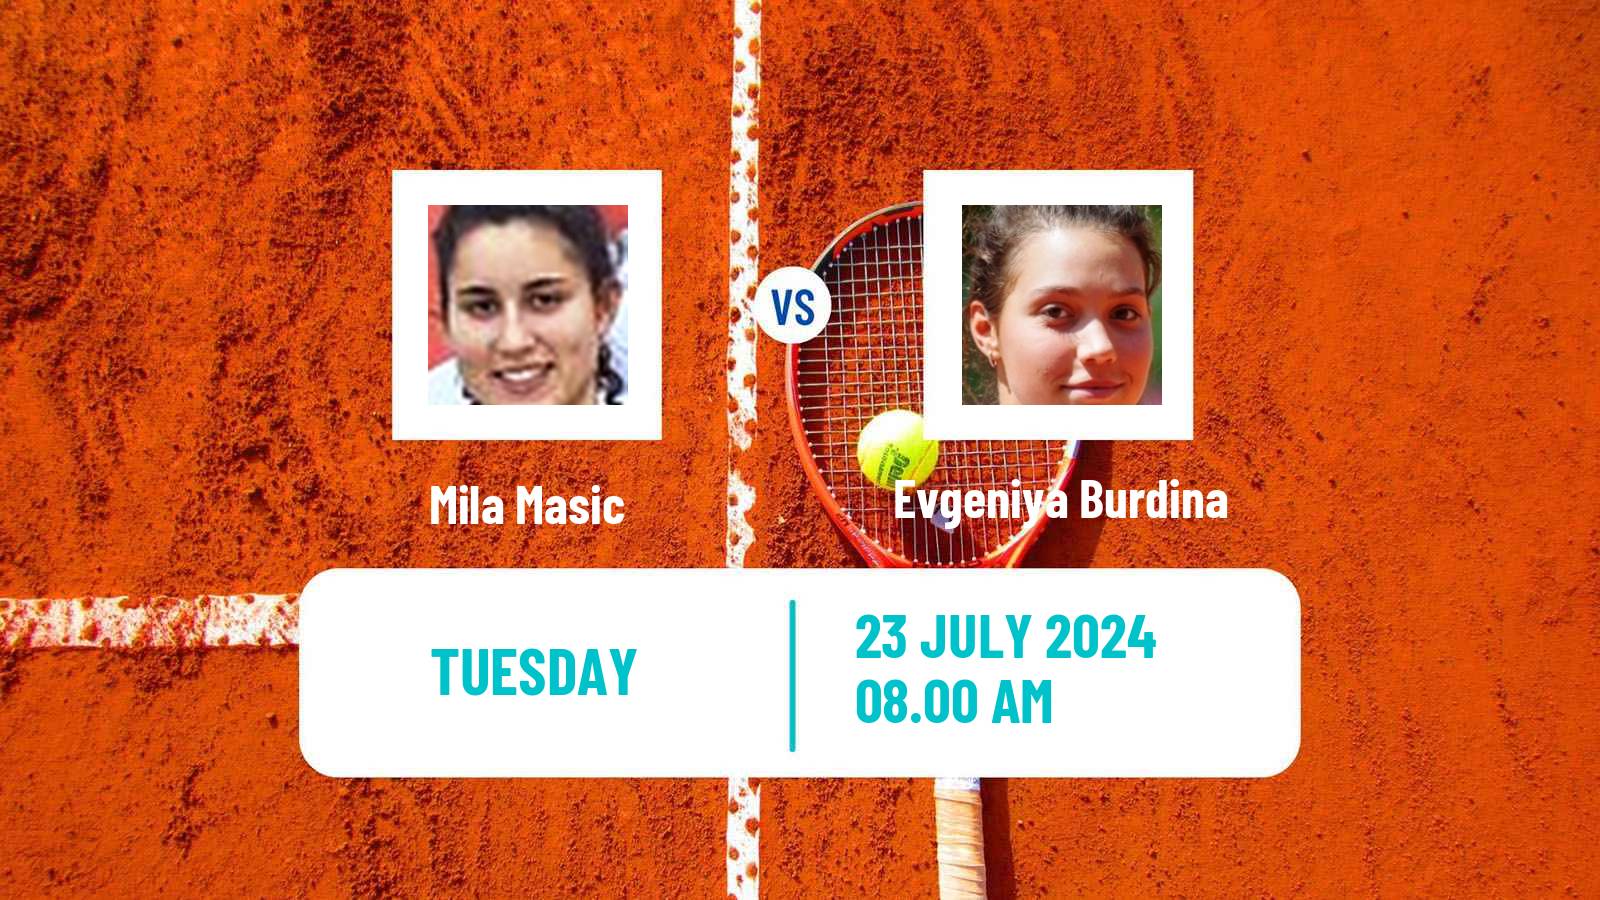 Tennis ITF W15 Kursumlijska Banja 13 Women Mila Masic - Evgeniya Burdina